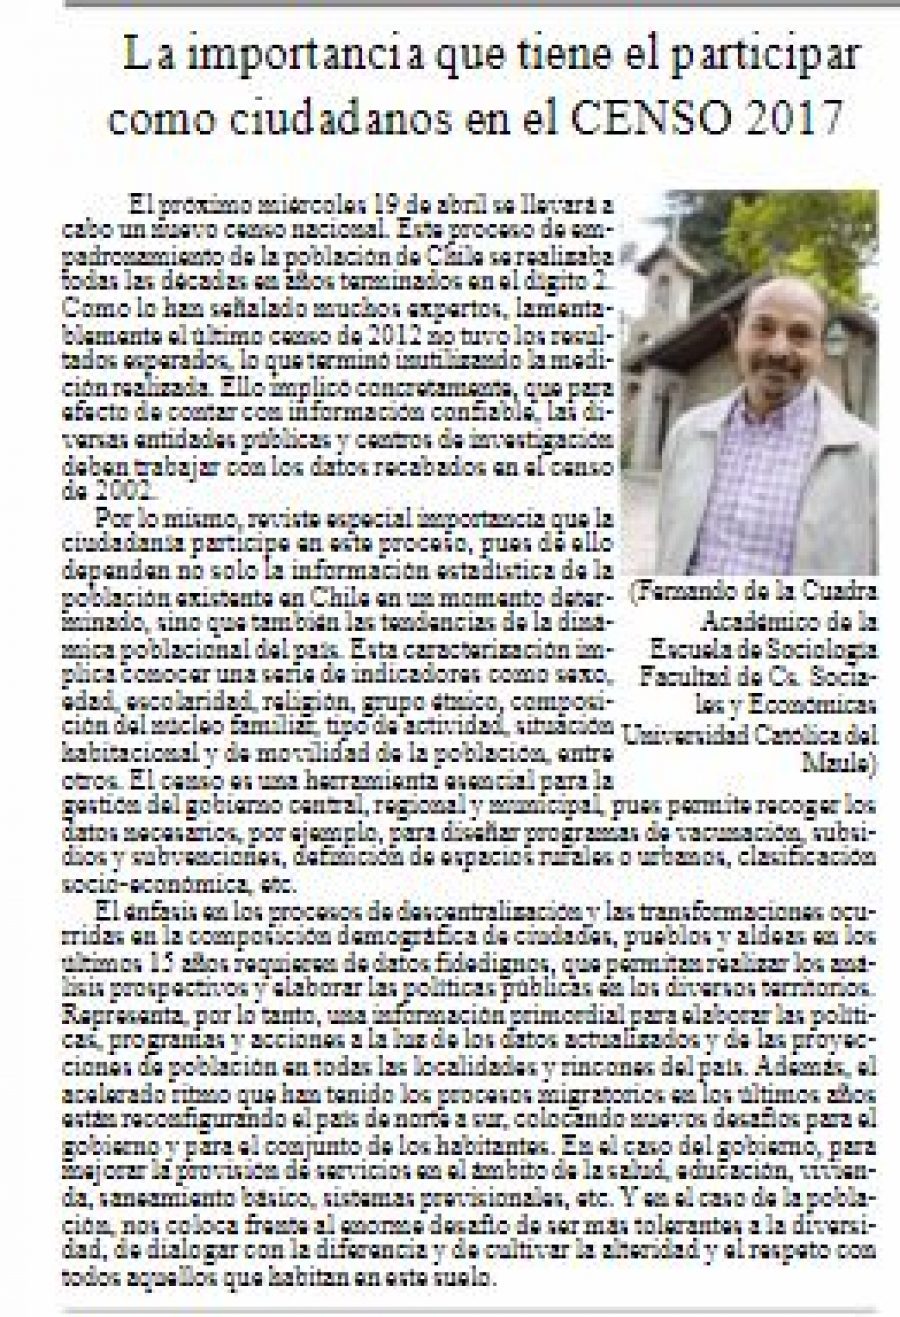 15 de abril en Diario El Heraldo: “La importancia que tiene el participar como ciudadanos en el CENSO 2017”